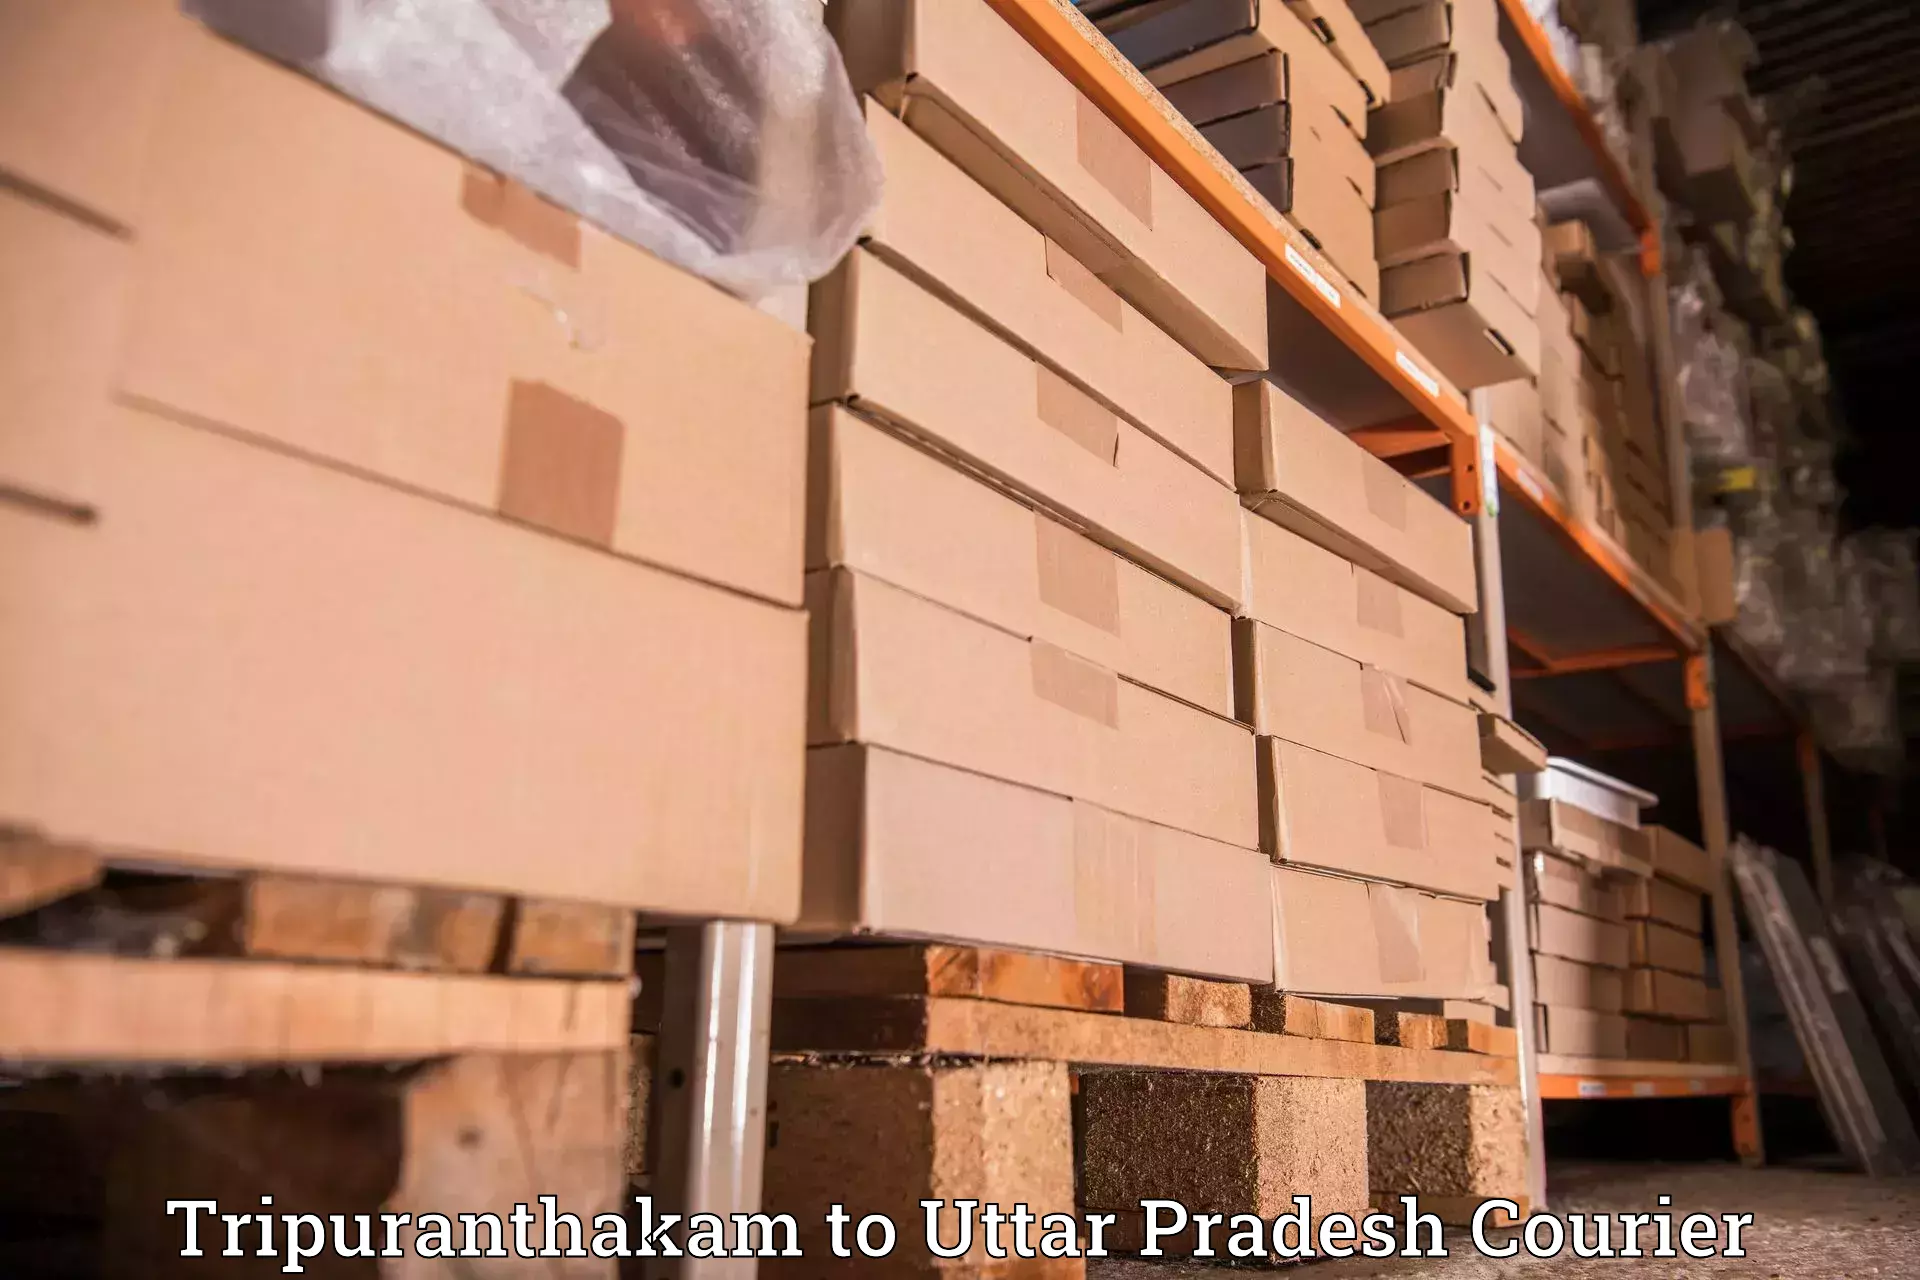 Parcel handling and care in Tripuranthakam to Uttar Pradesh